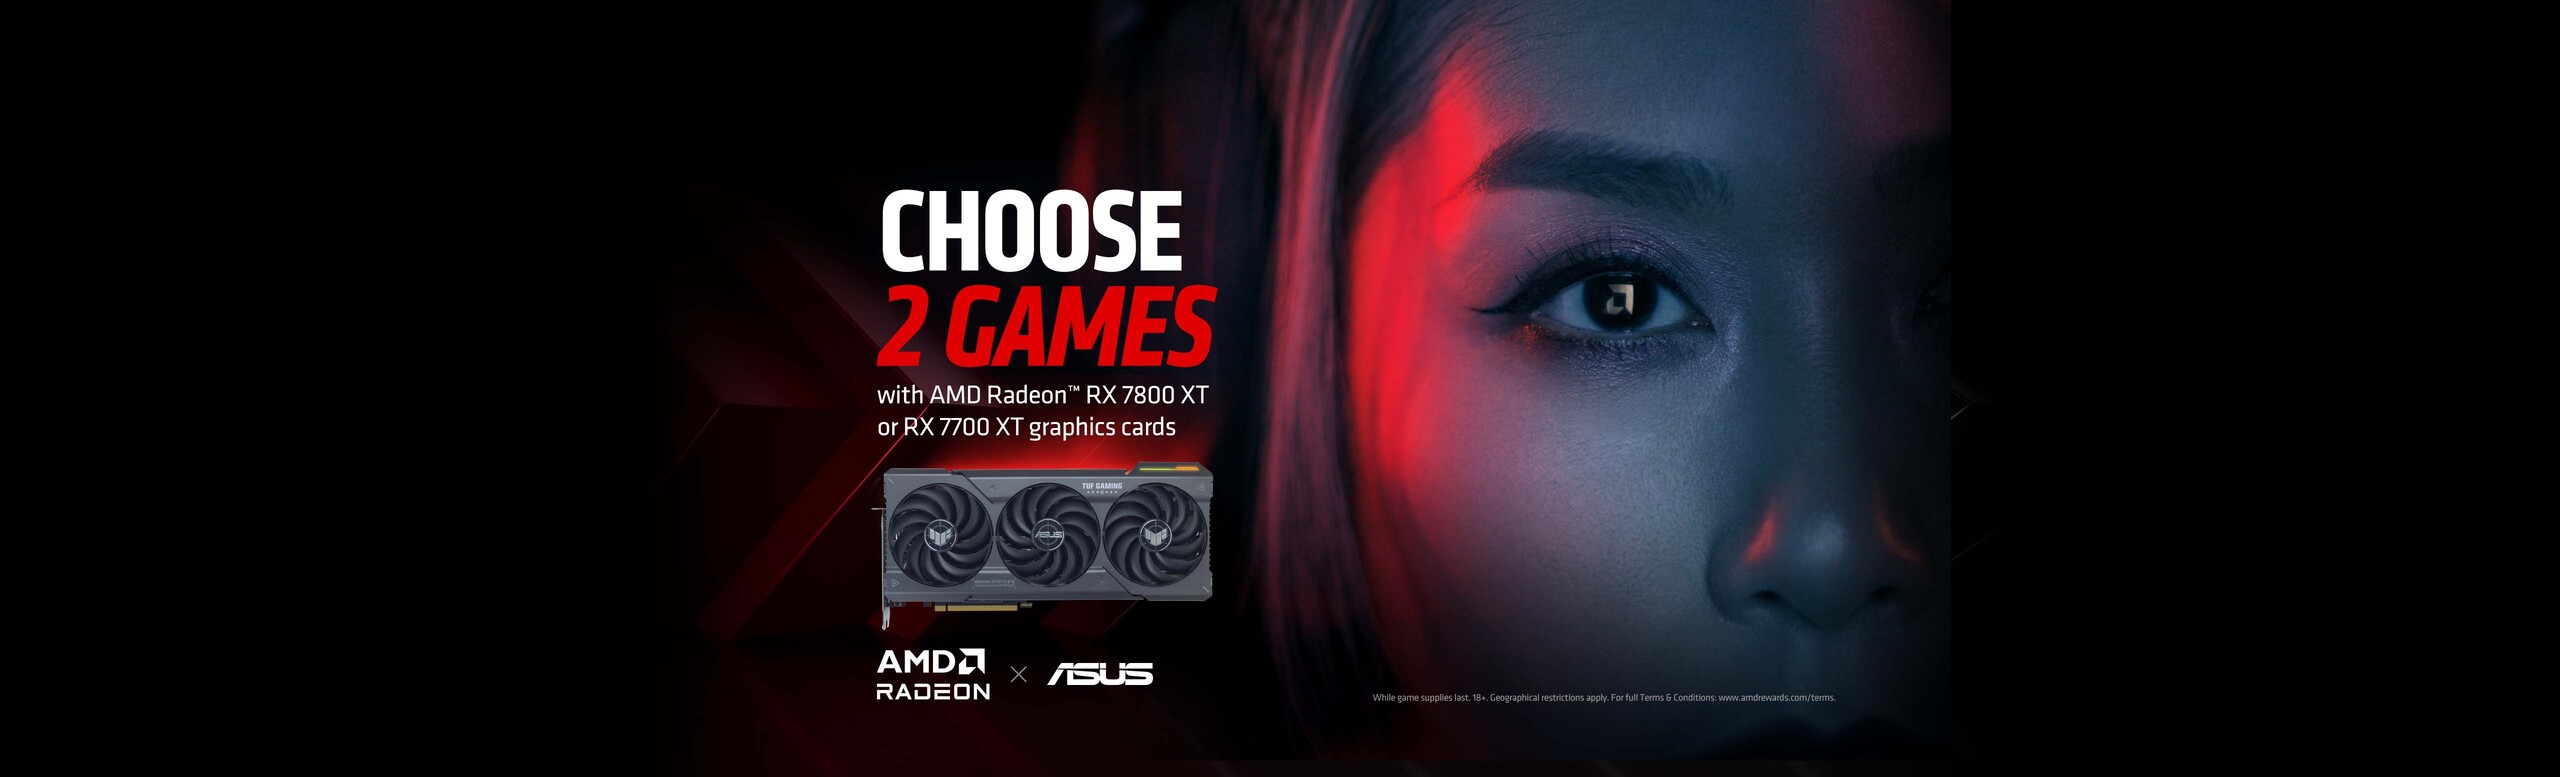 AMD Game Bundle